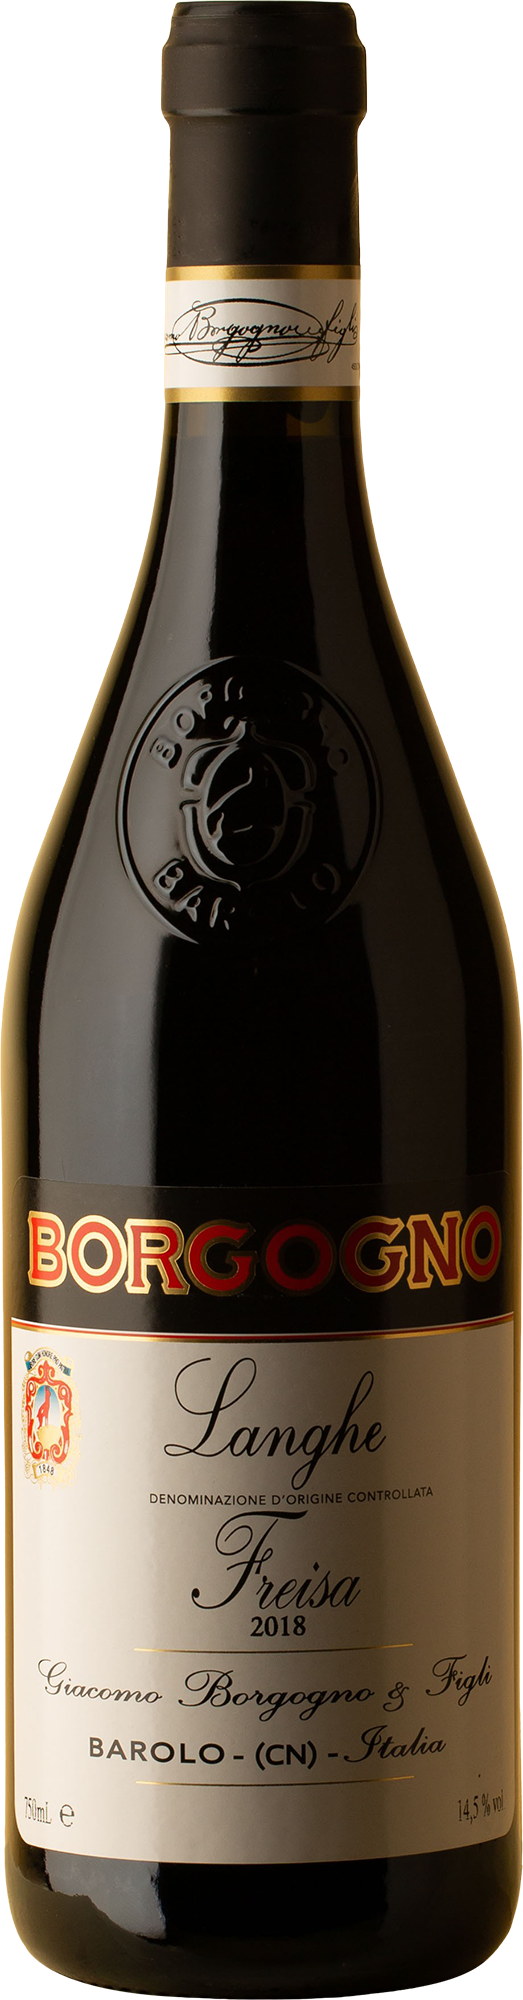 Borgogno - Langhe Freisa 2018 Red Wine